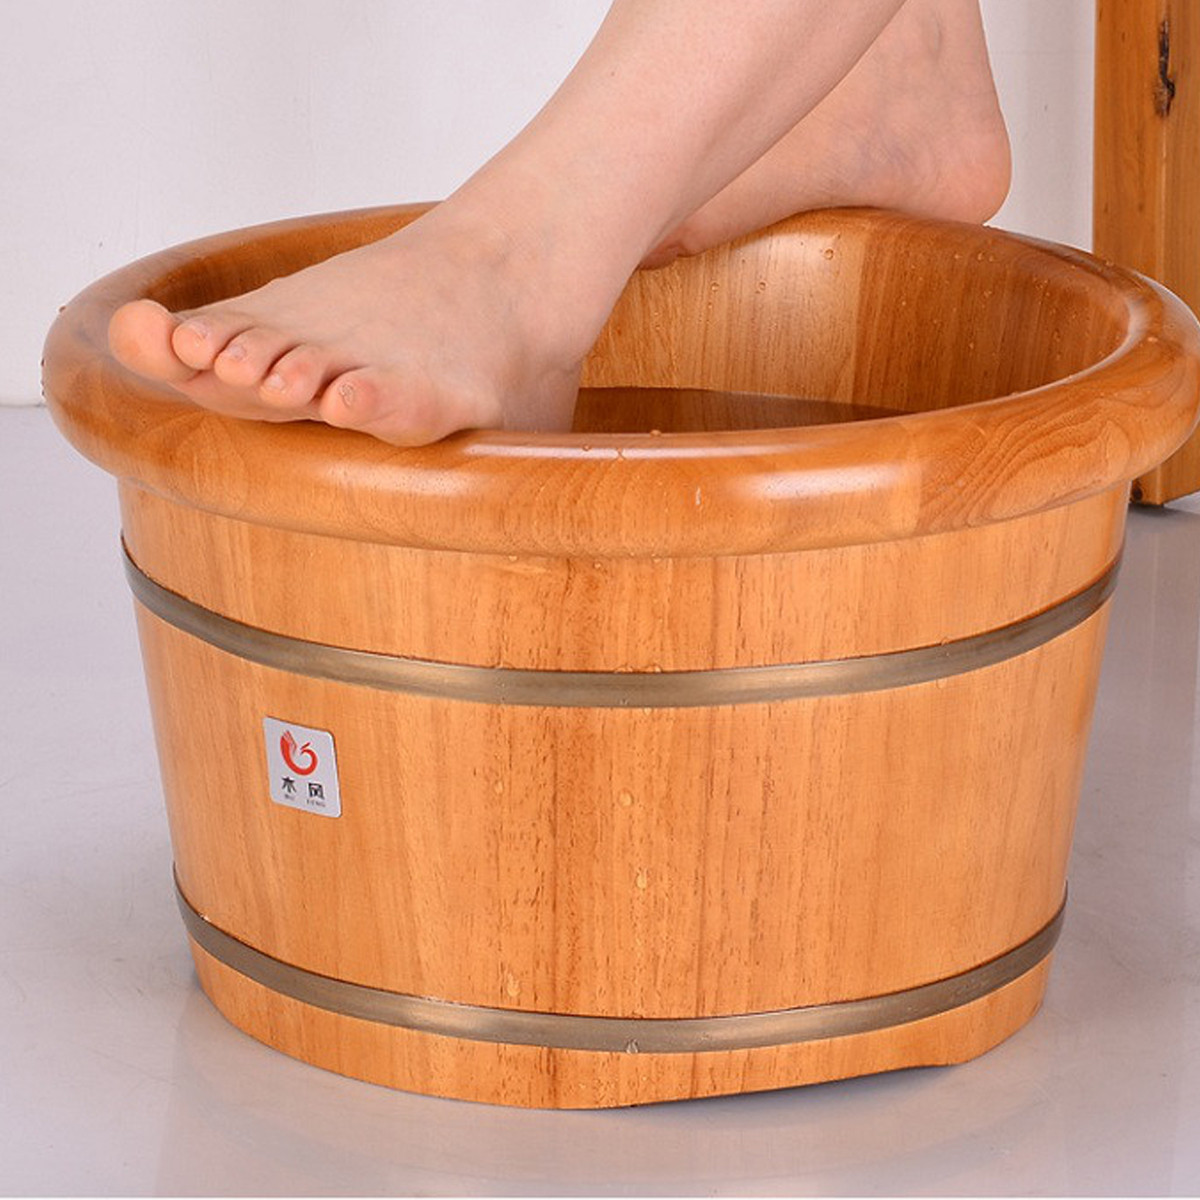 洗脚木盆泡脚桶足浴桶泡脚木桶足浴盆木盆家用足疗桶橡木质25cm高带盖